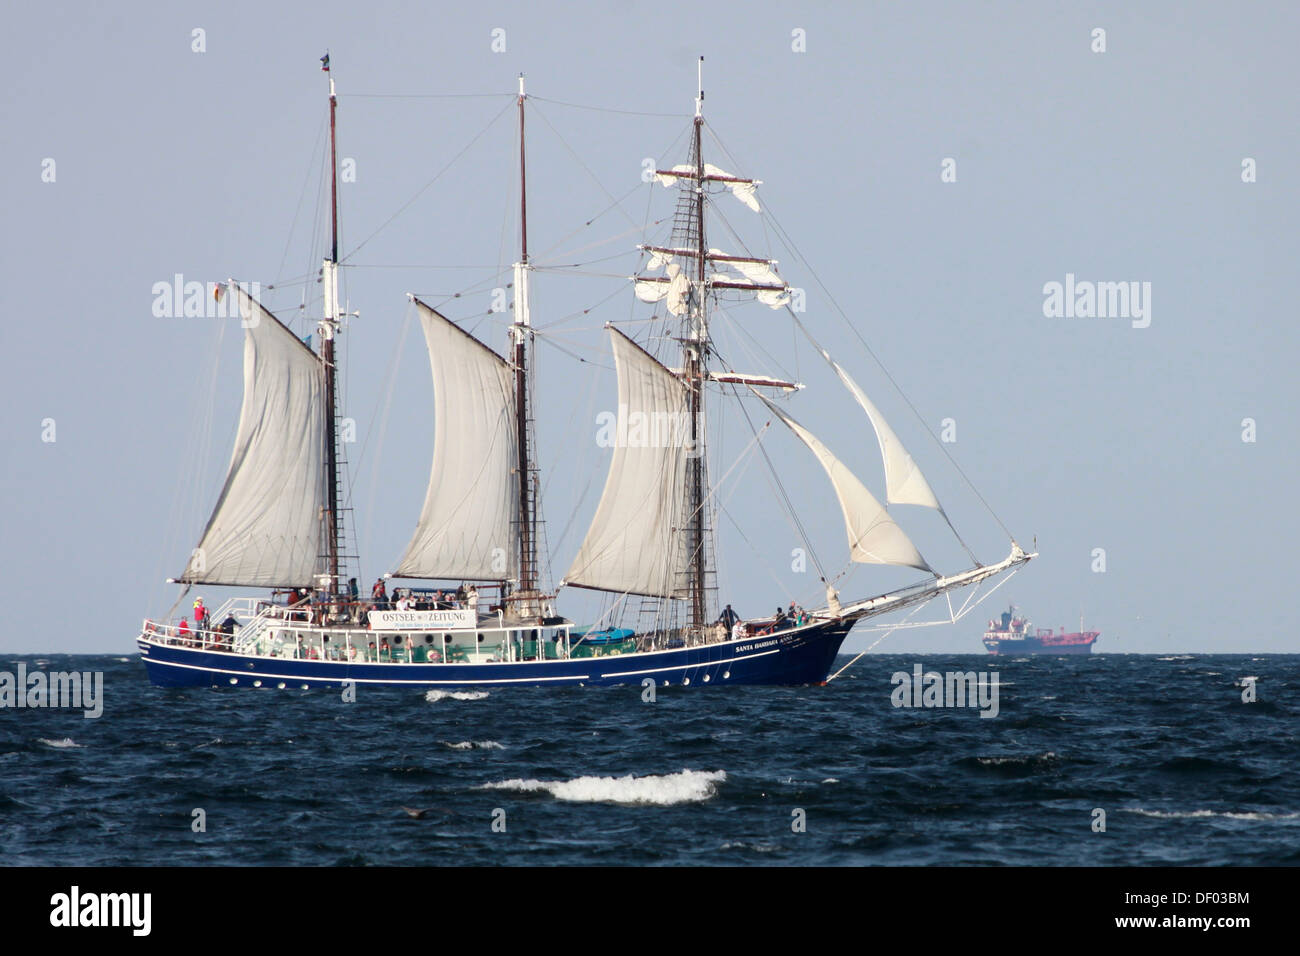 Three-masted traditional rig sailing ship Santa Barbara Anna, sailing on the Baltic Sea, Germany Stock Photo